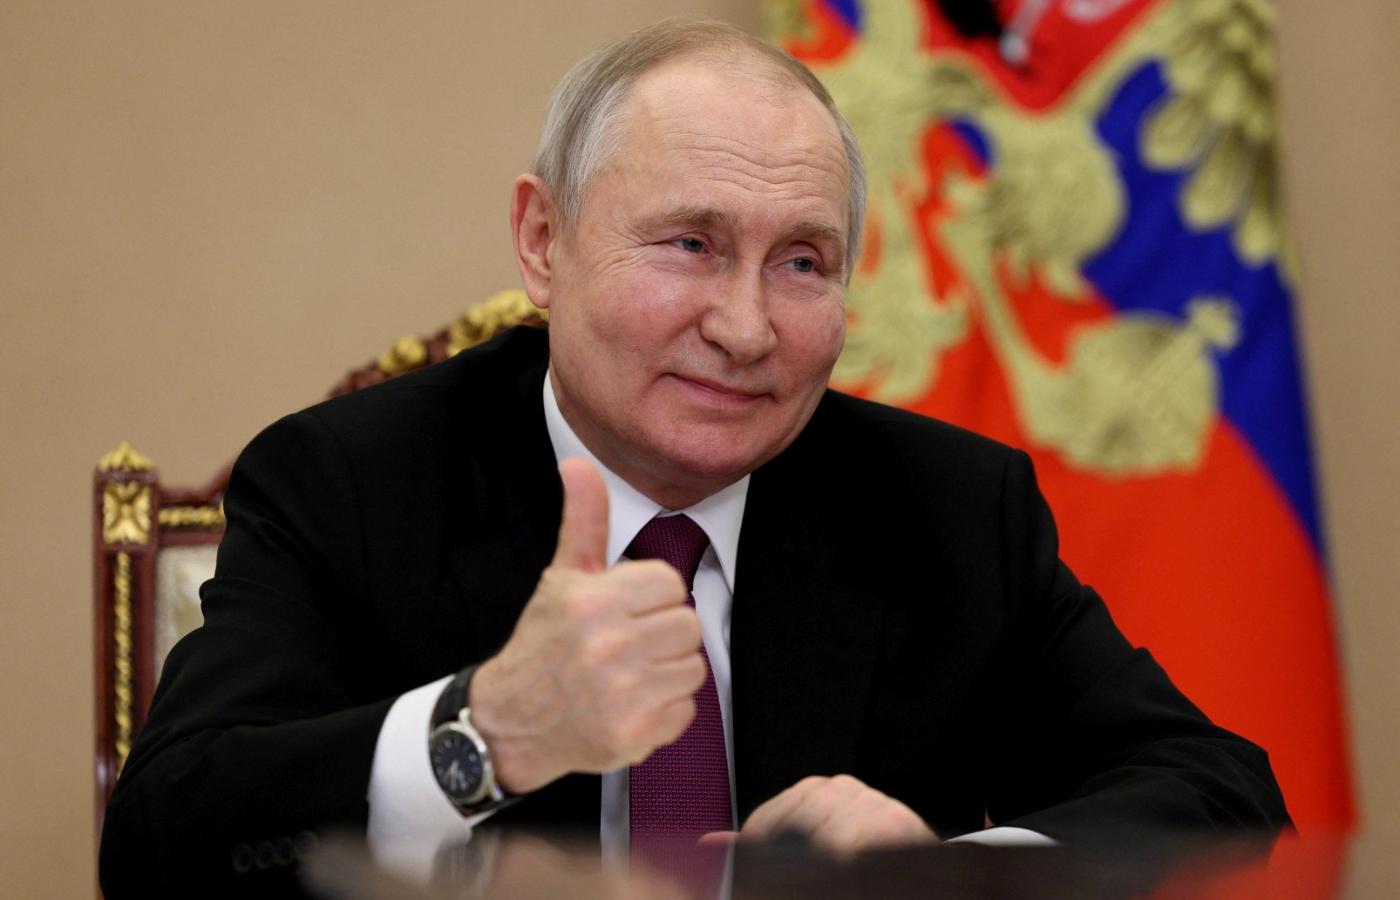 Władimir Putin podczas wideorozmowy. Zdjęcie datowane na 1 czerwca 2023 r.